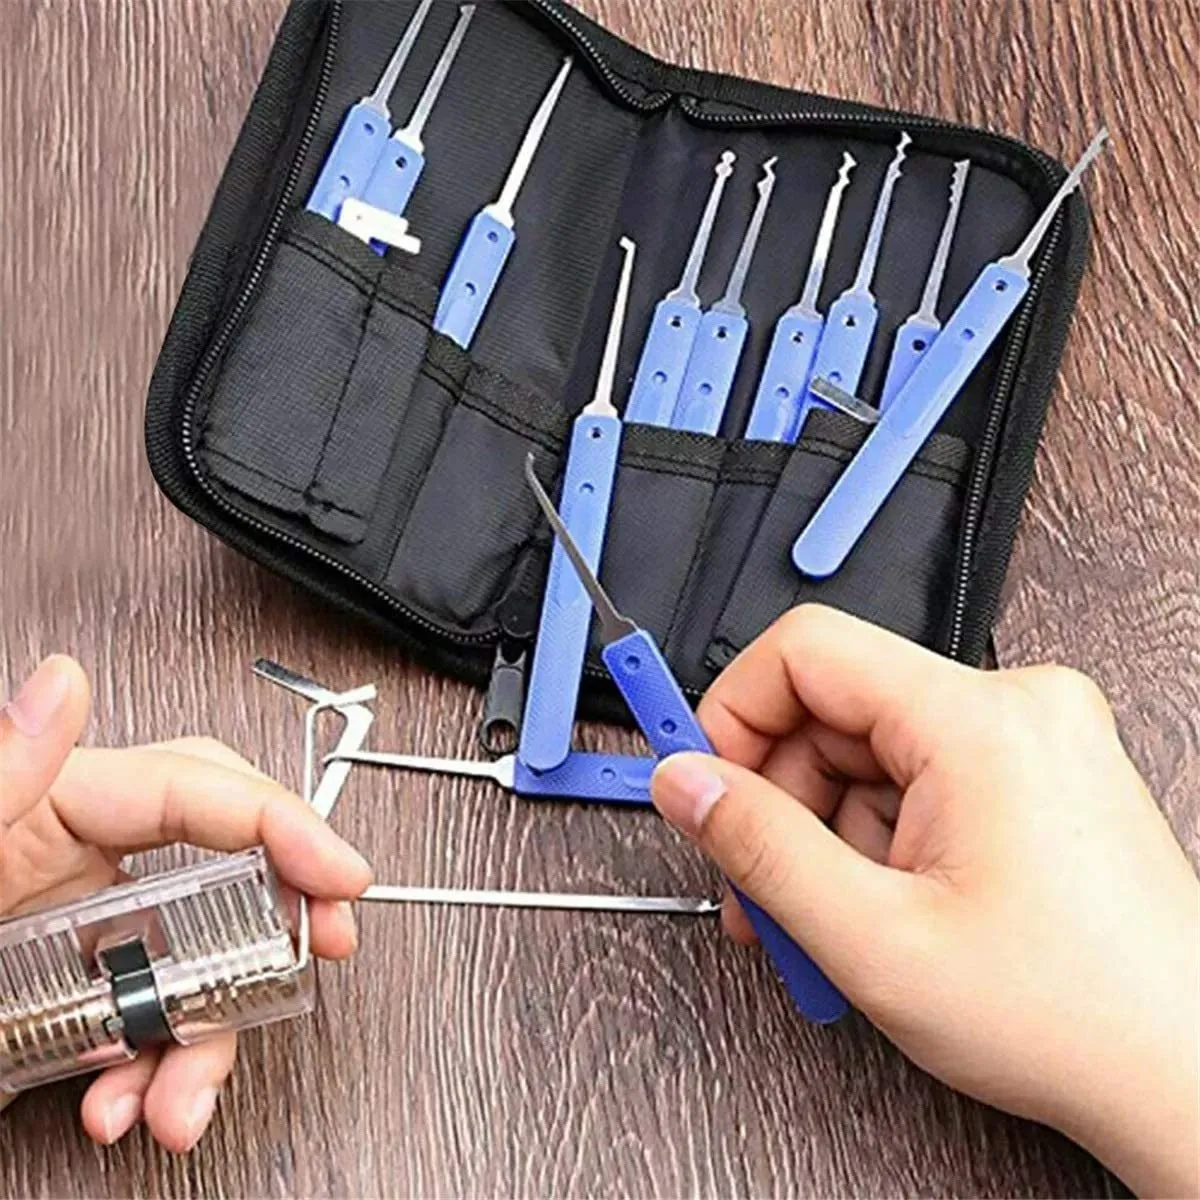 18 ferramentas de serralheiro transparente kit de bloqueio de prática com extrator de chave quebrada ferramenta de remoção de ganchos palhetas de bloqueio de hardware locksmit311i